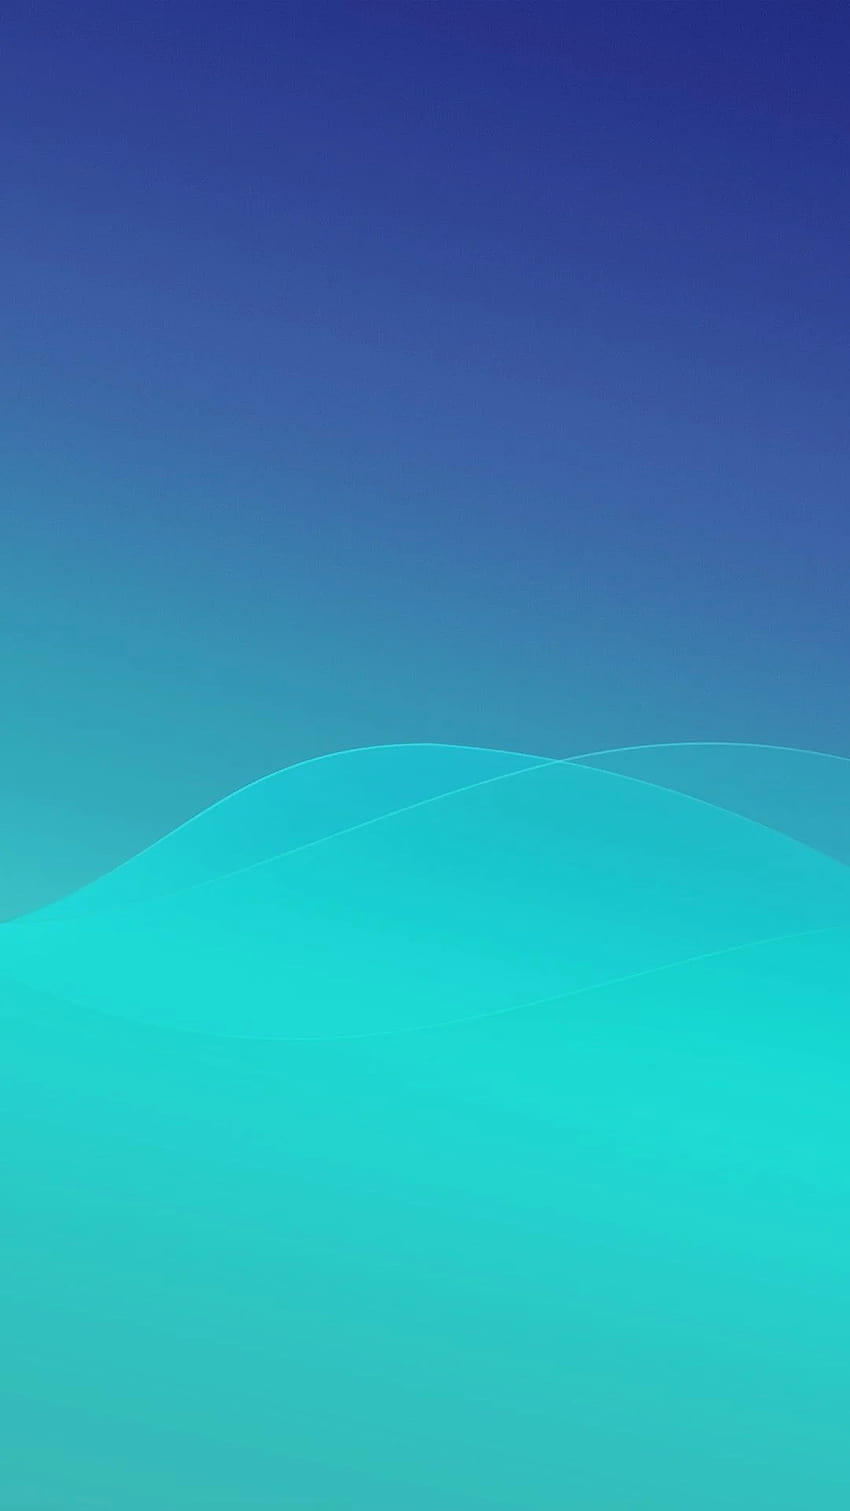 Minimal Abstract Blue Waves iPhone, verde cielo azul minimalista fondo de pantalla del teléfono